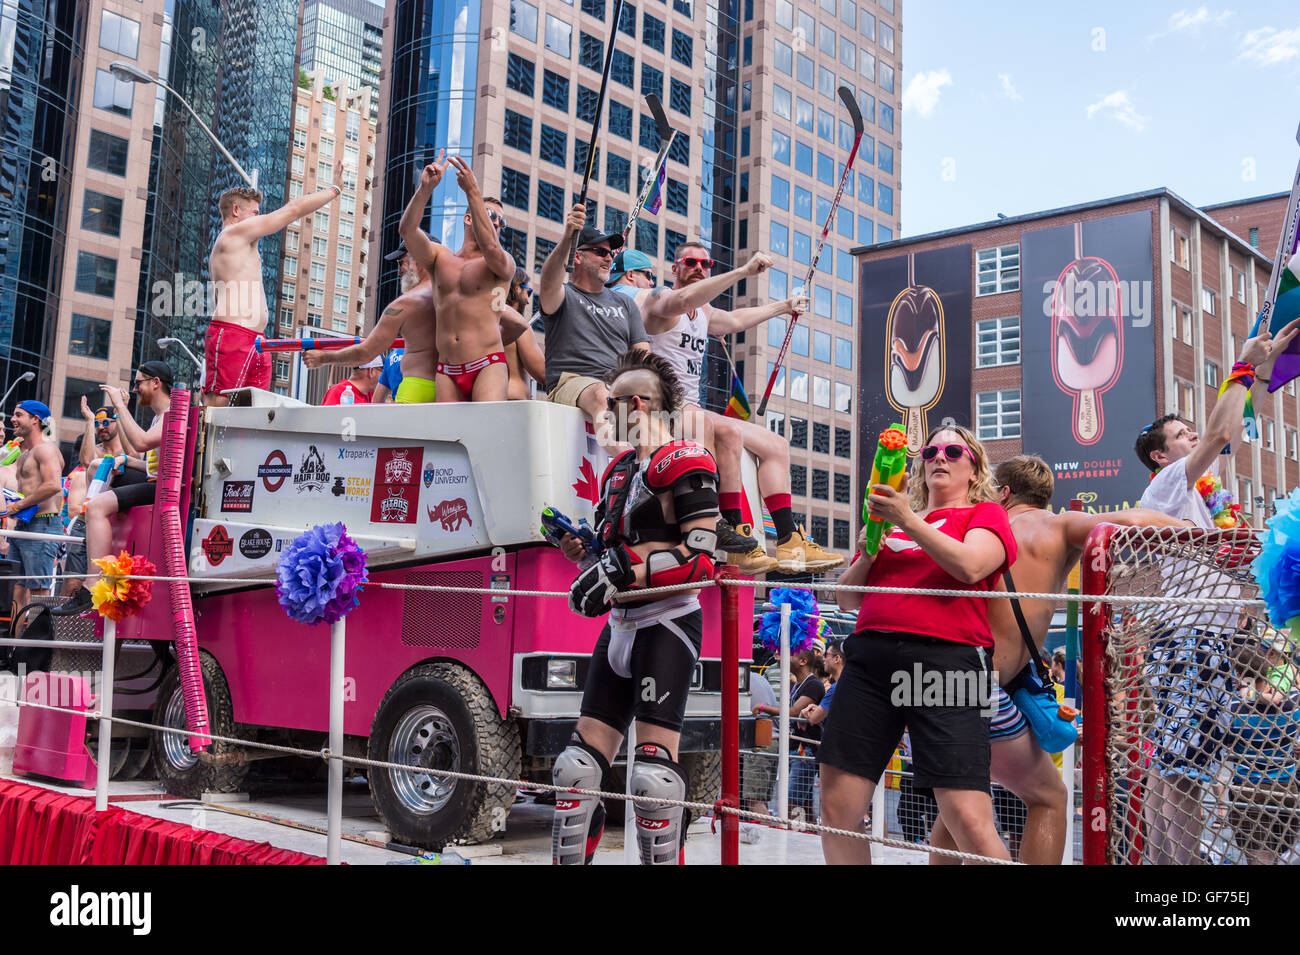 Toronto, CA - 3 juillet 2016 : Les participants à la parade de la fierté gaie de Toronto 2016 Banque D'Images